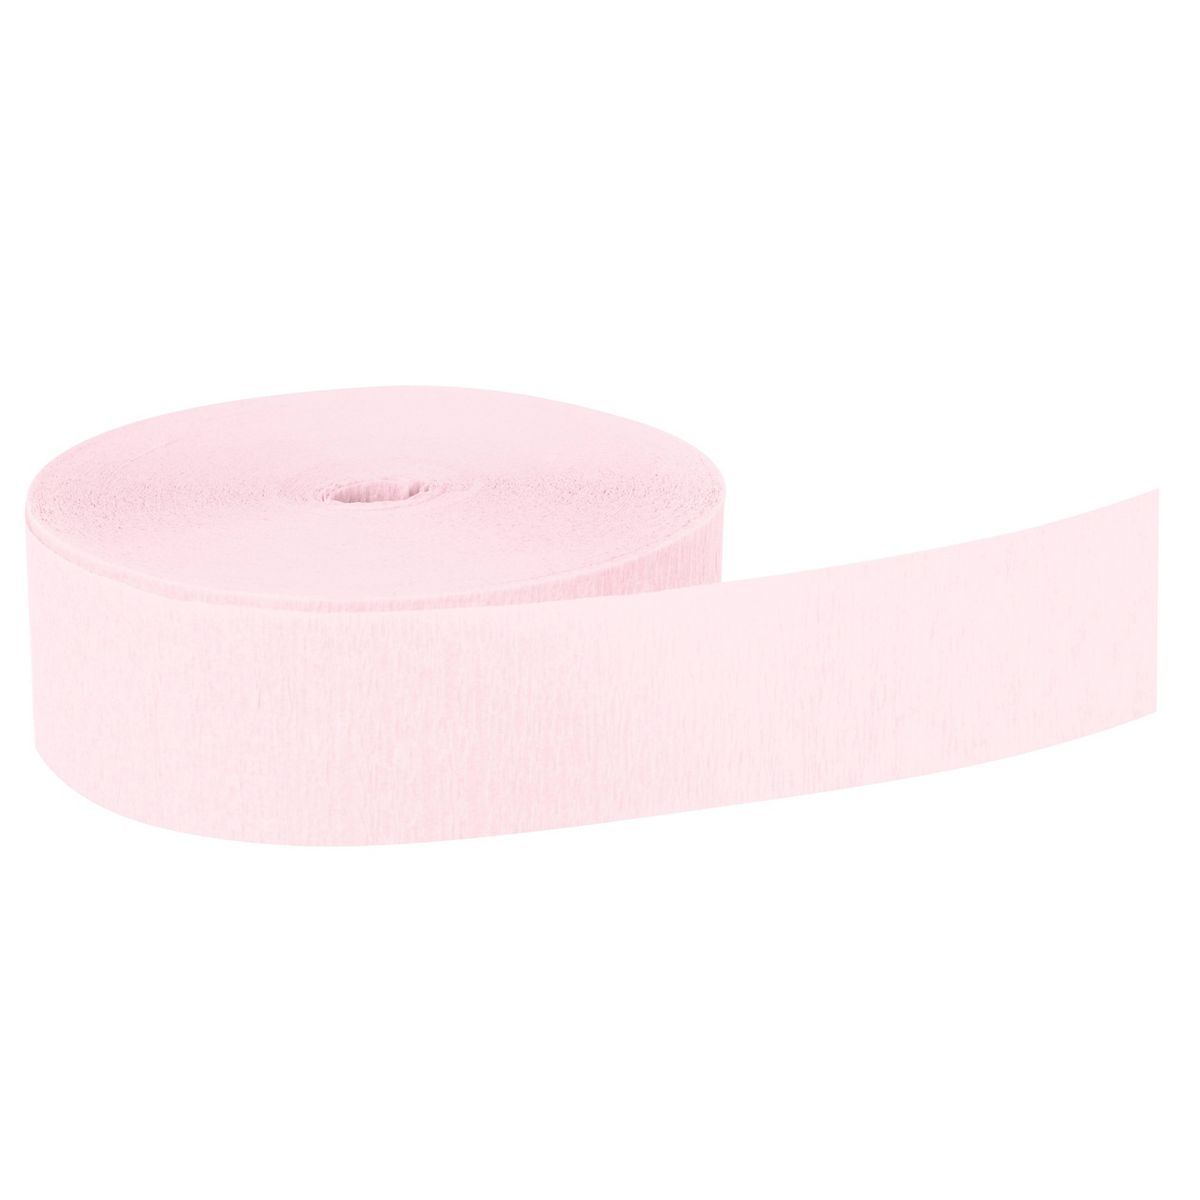 Crepe Paper Streamer Pink - Spritz™ | Target